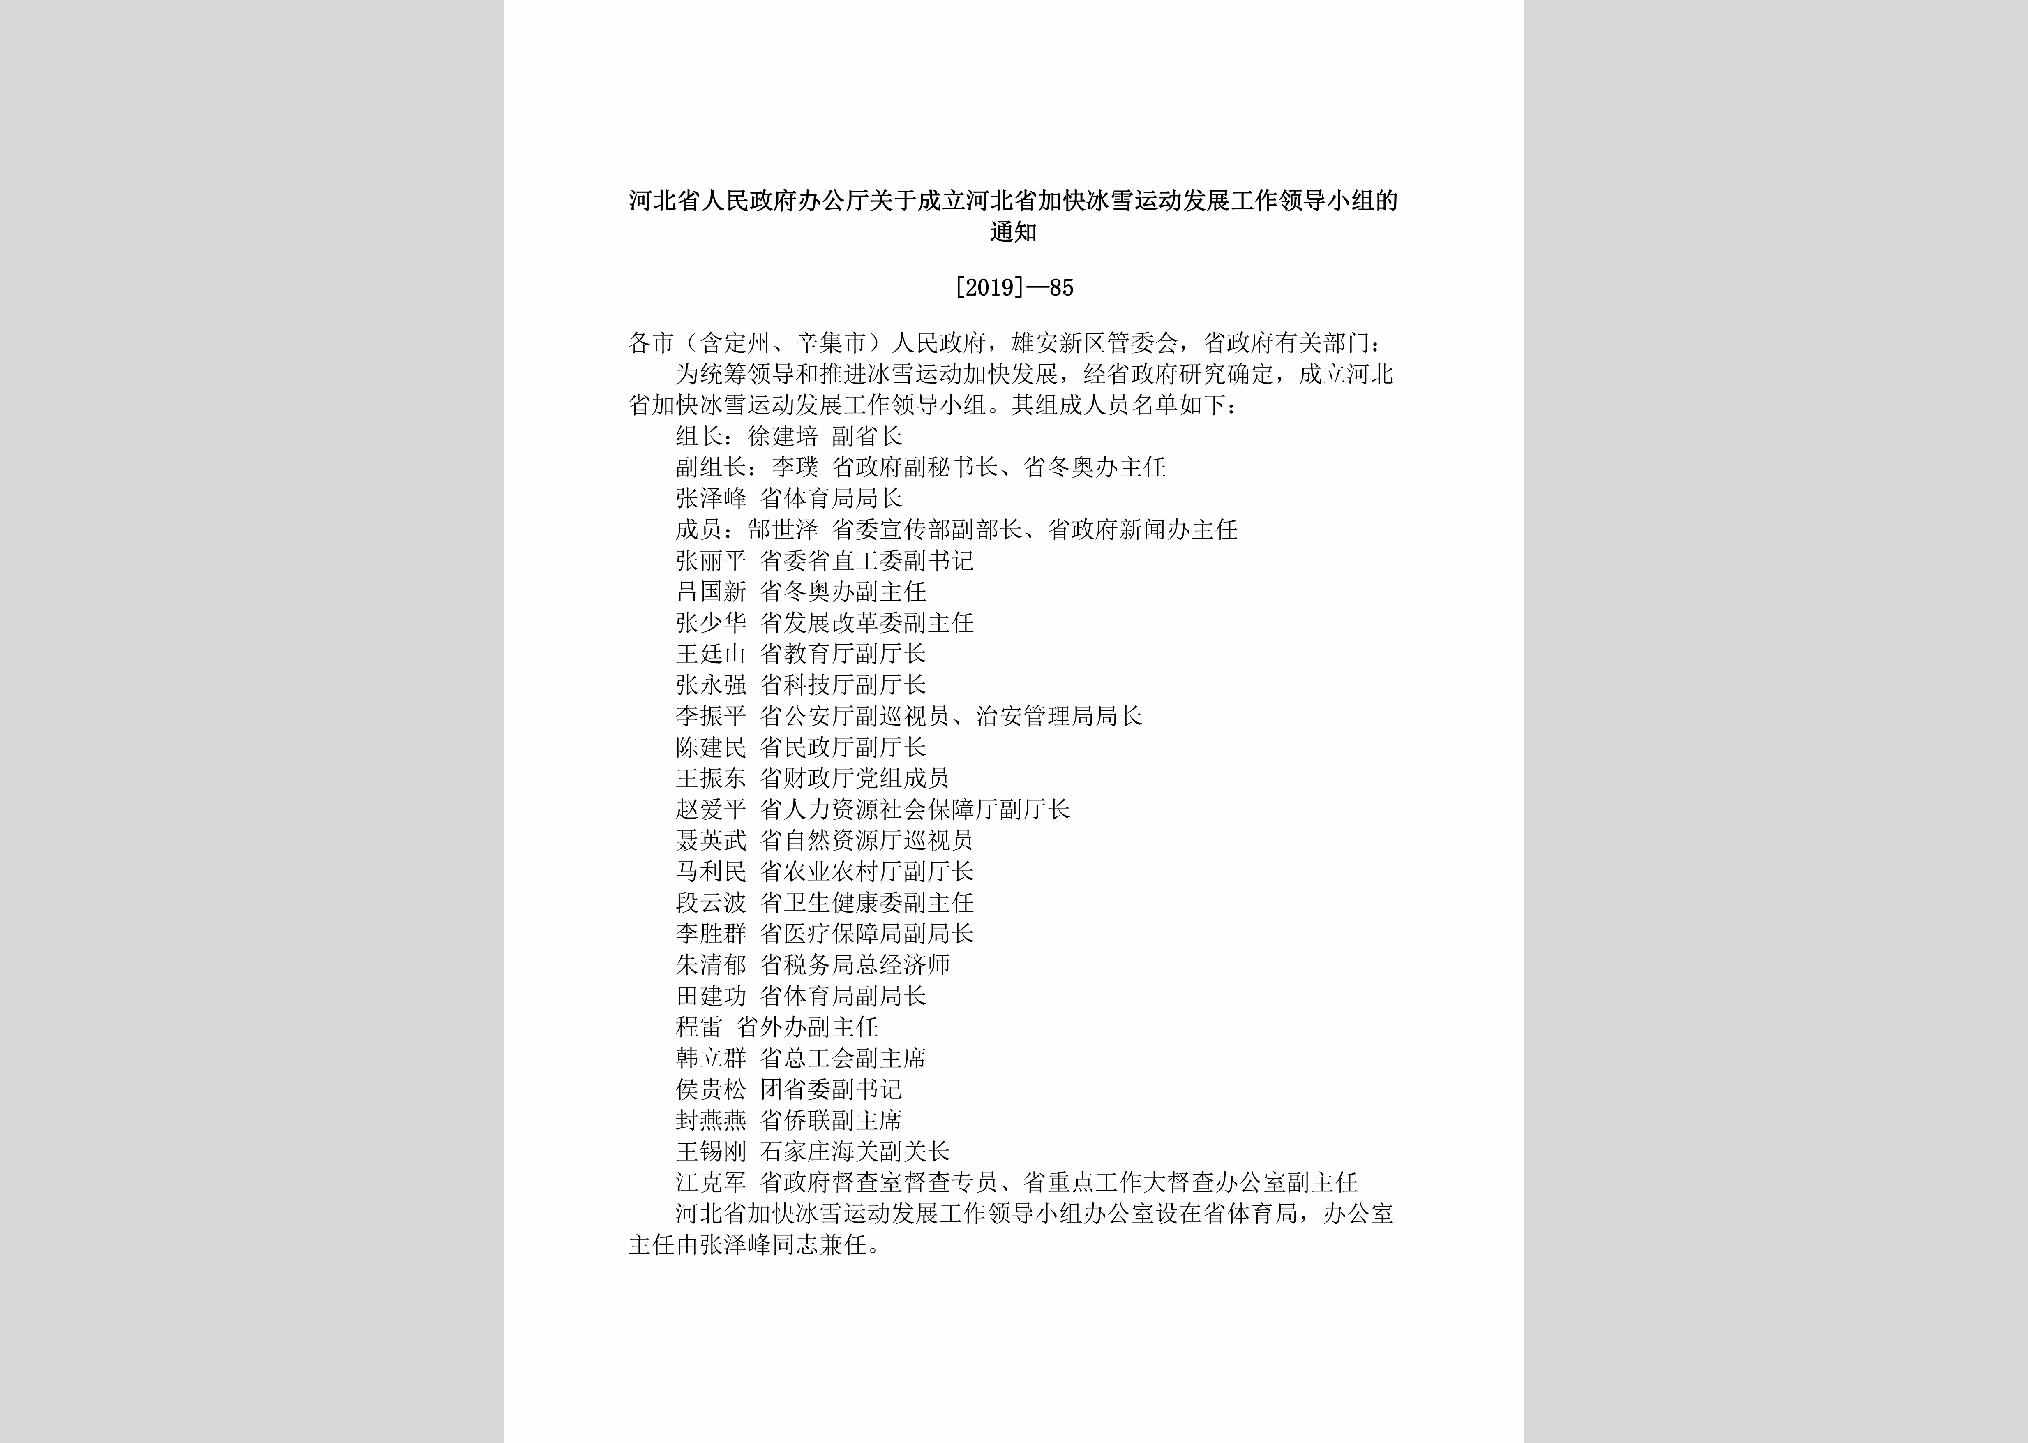 [2019]-85：河北省人民政府办公厅关于成立河北省加快冰雪运动发展工作领导小组的通知